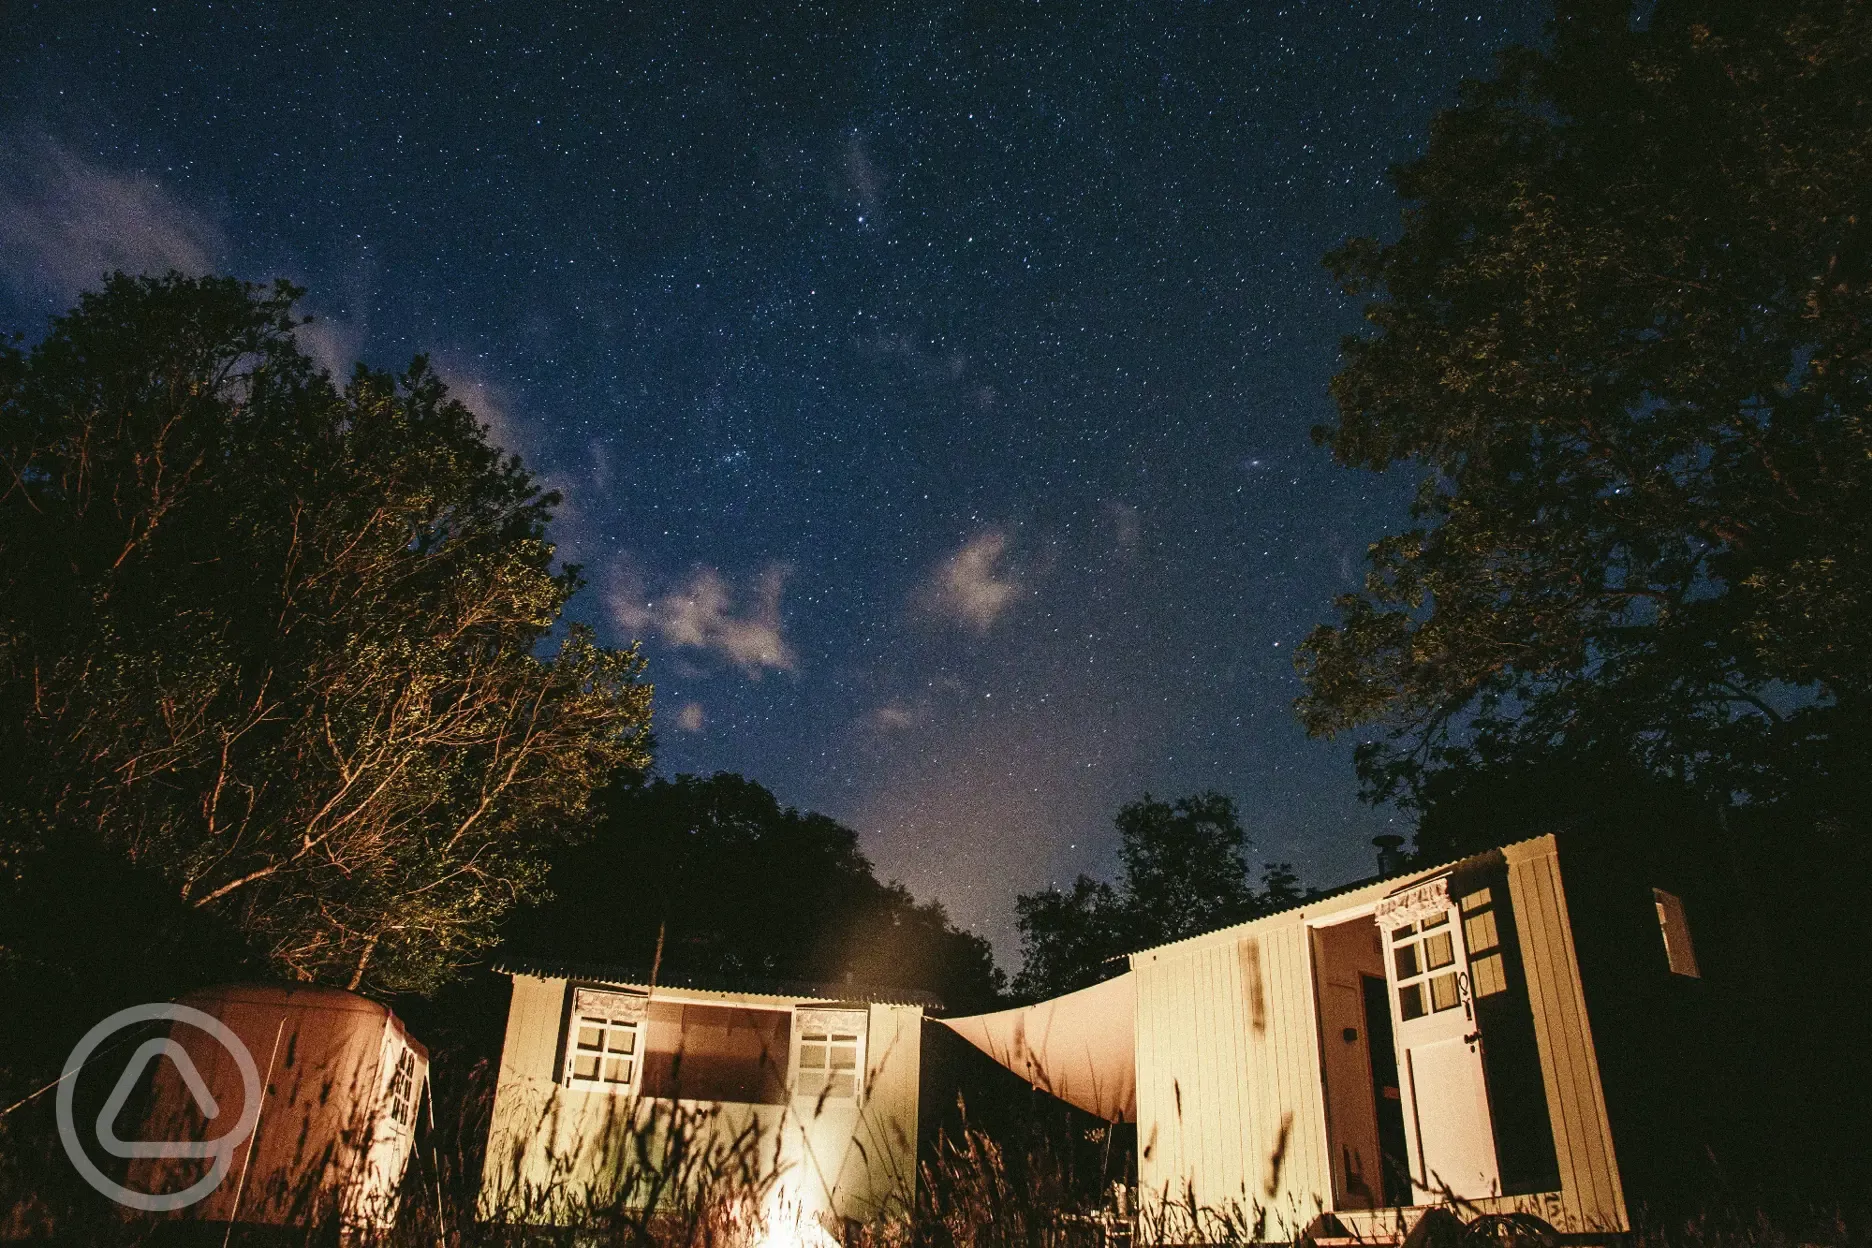 Shepherds' huts under a starry sky